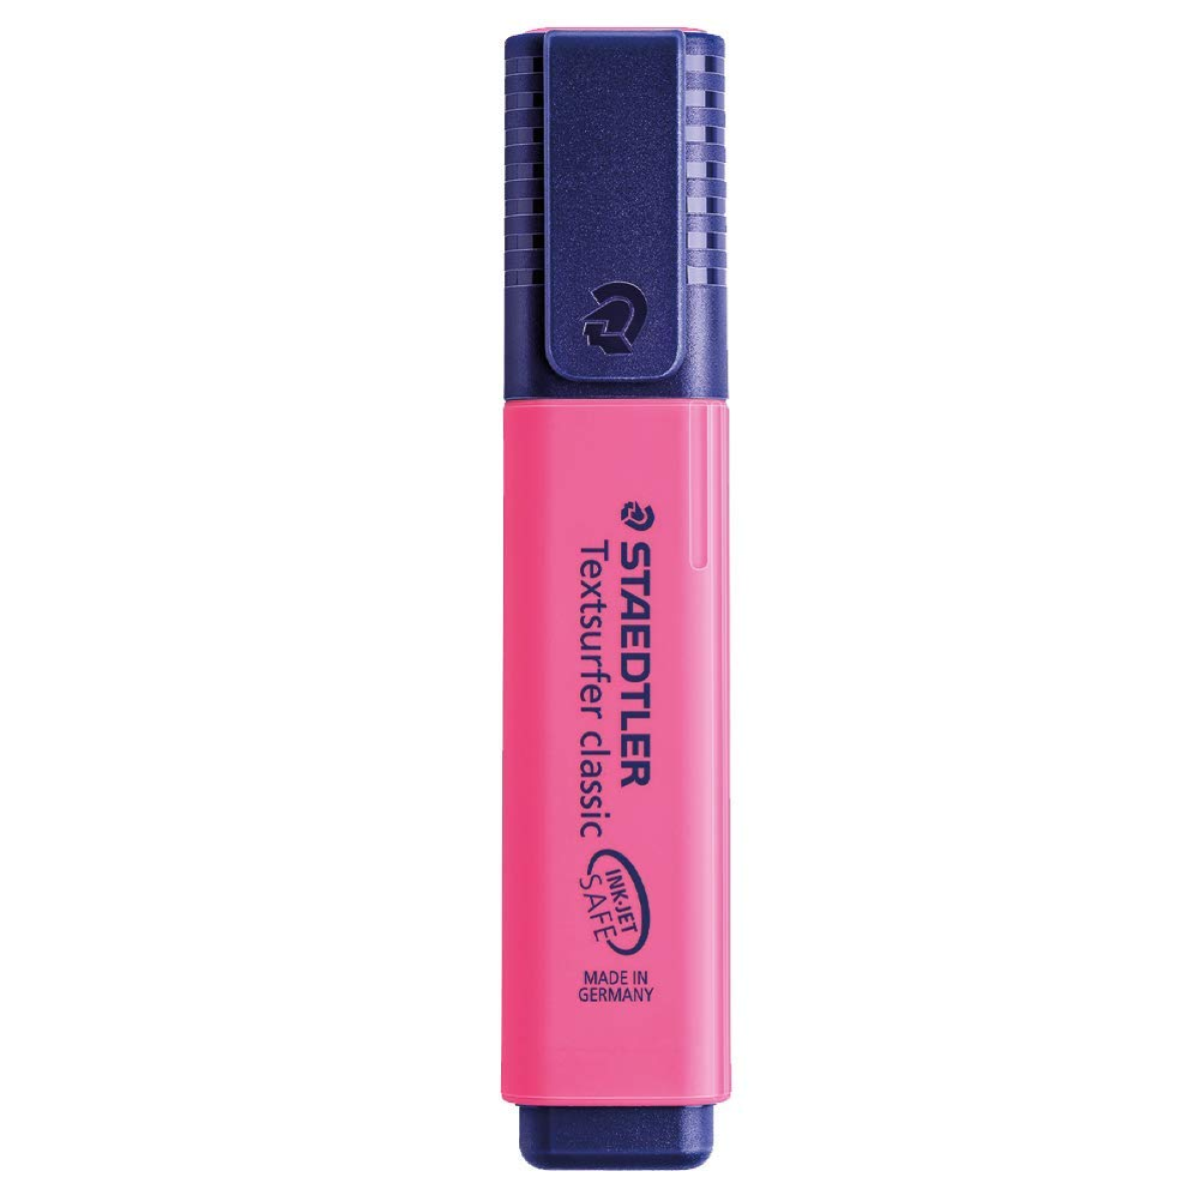 Staedtler Phosphorescent Highlighter pen, Pink, chisel tip, 364.23